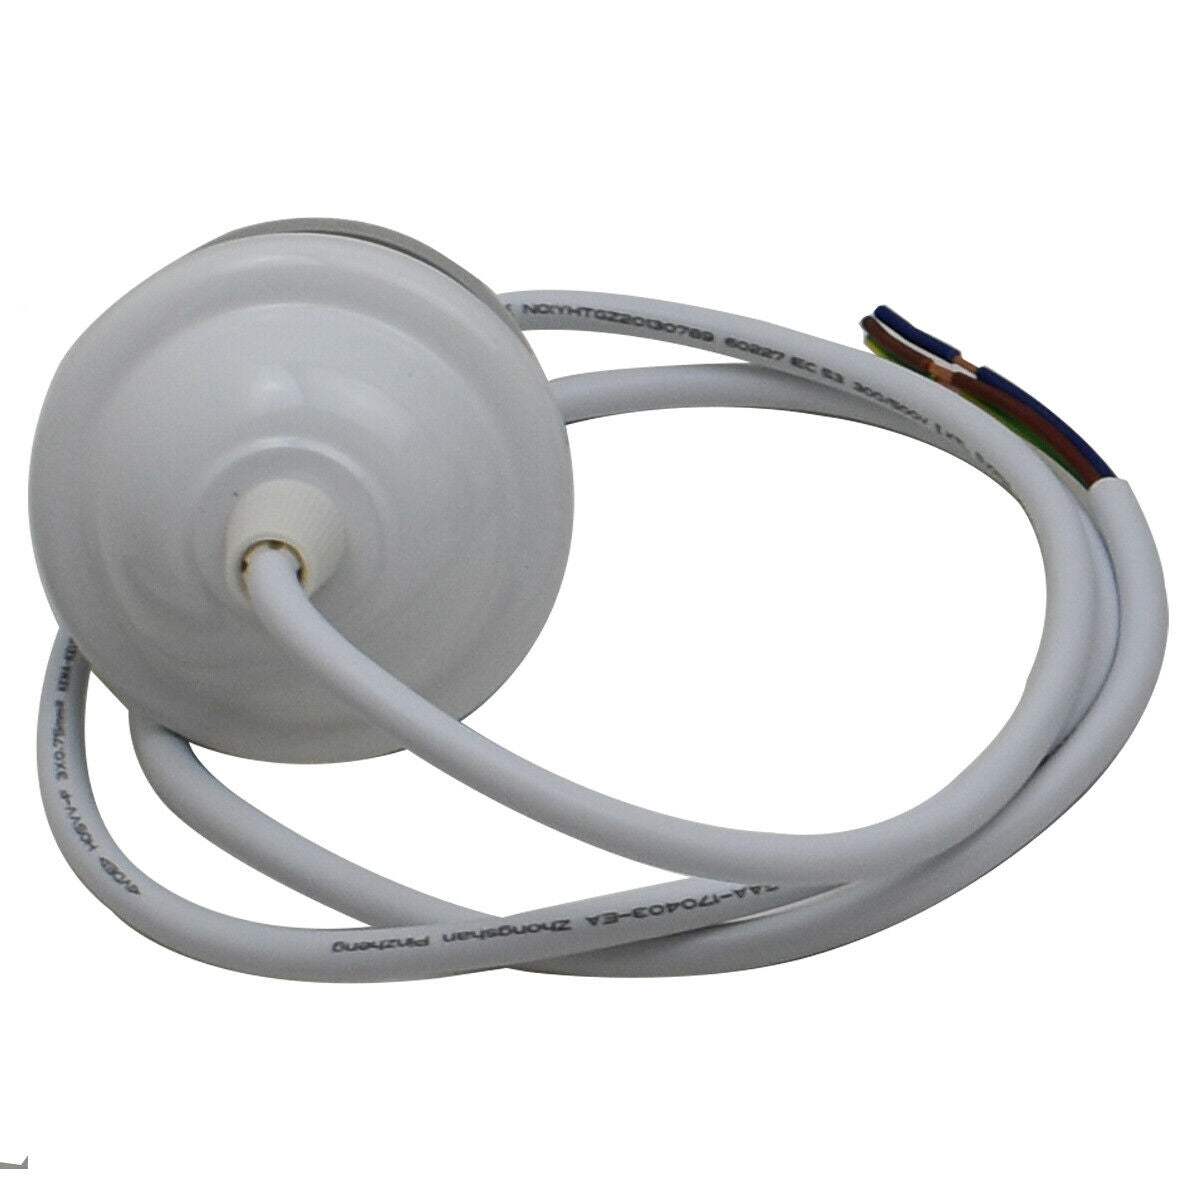 Retro Lamp Base Vintage E27 White Socket Bulb Holder Fitting